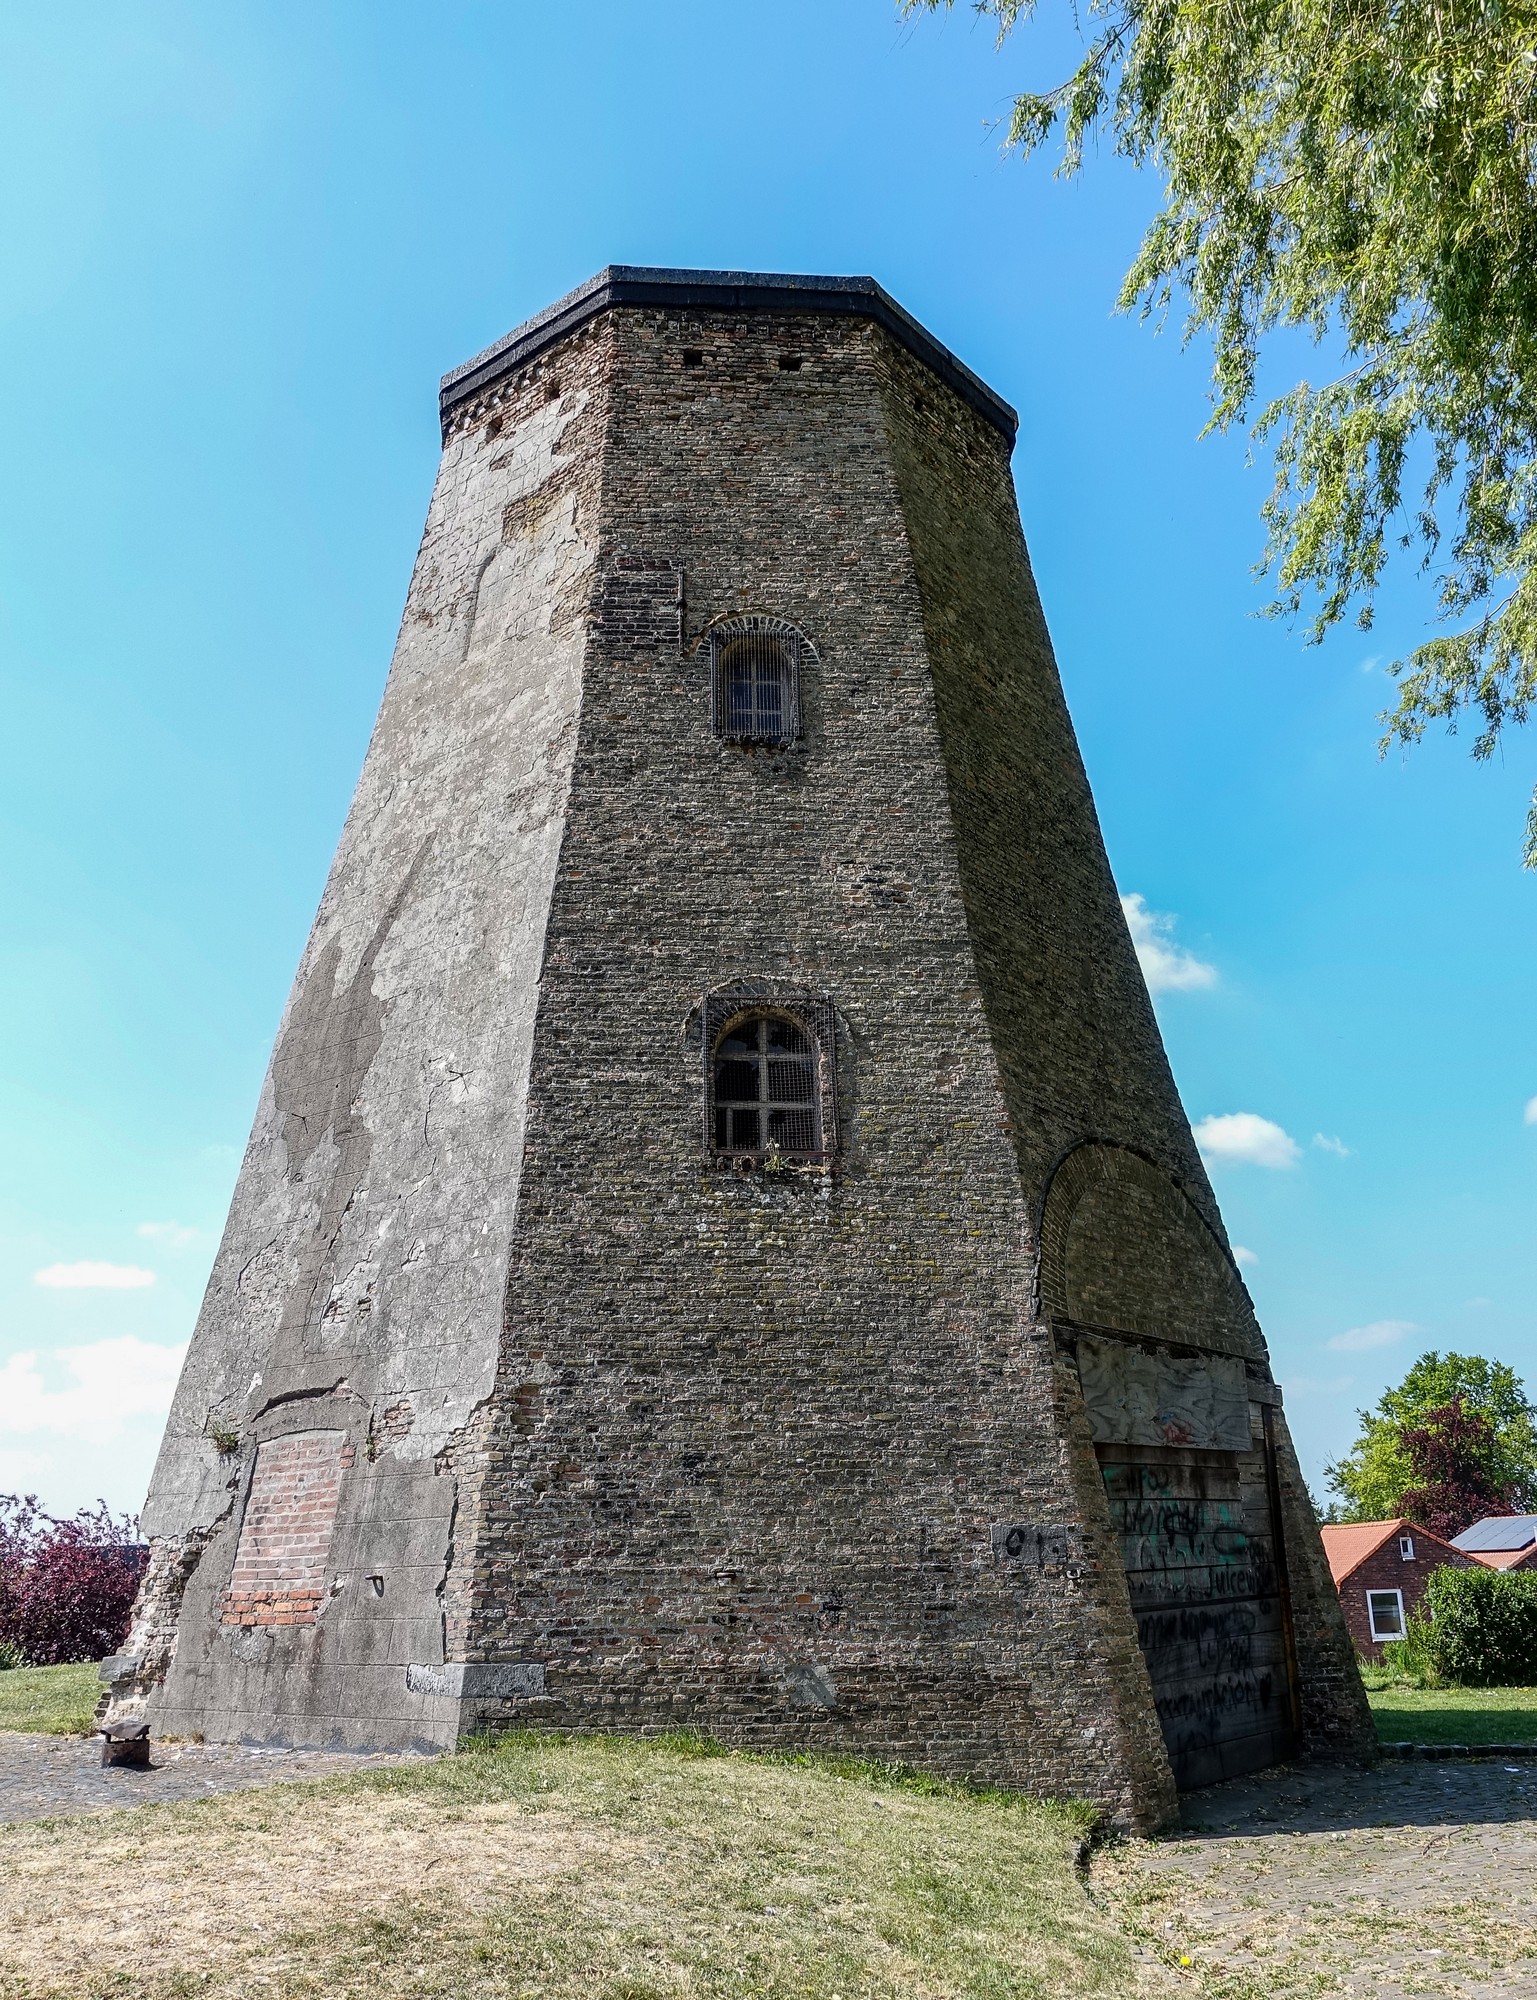 Sas van Ghent old windmill